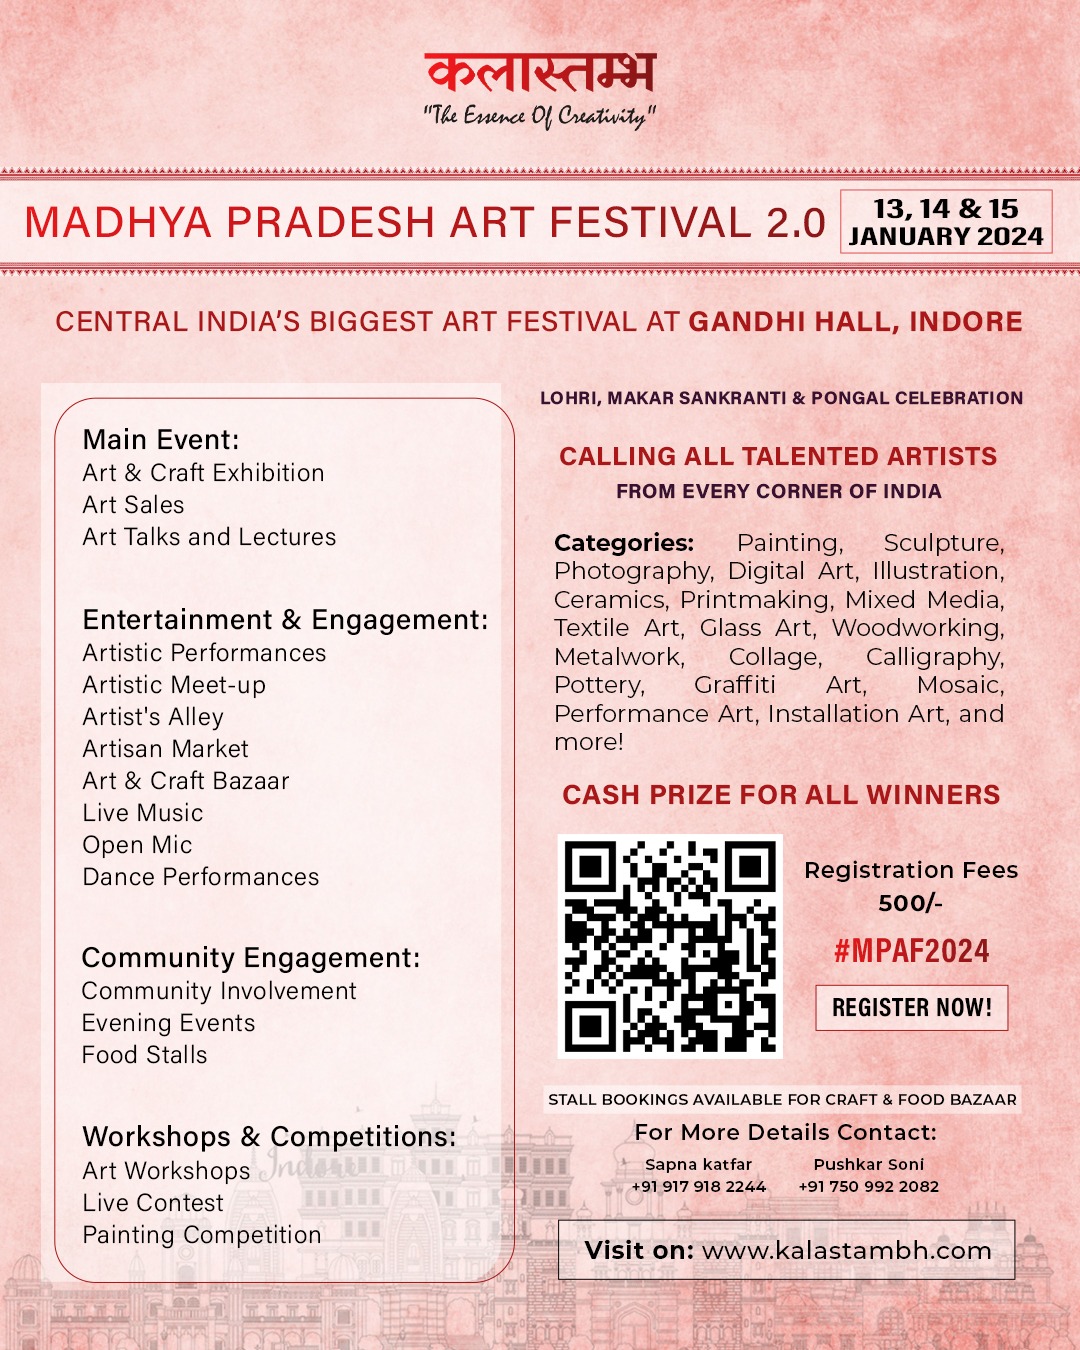 Madhya Pradesh Art Festival 2.0